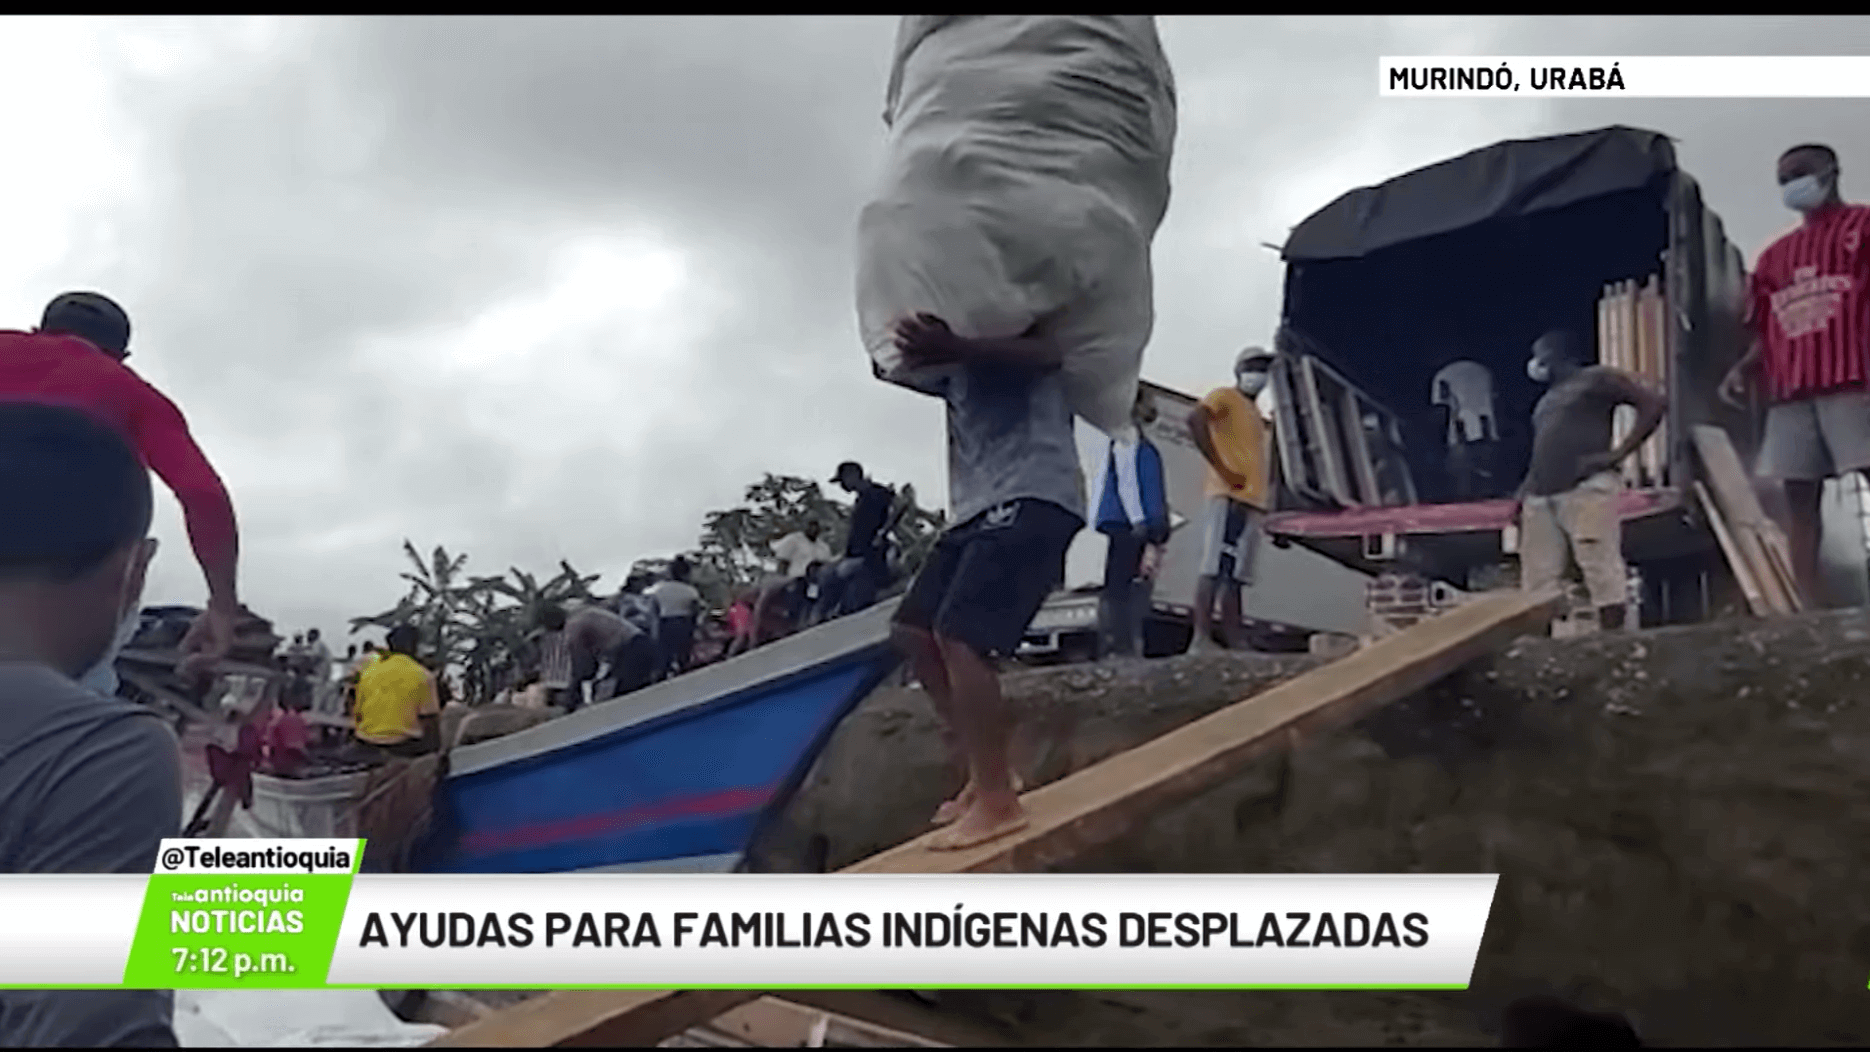 Ayudas para familias indígenas desplazadas